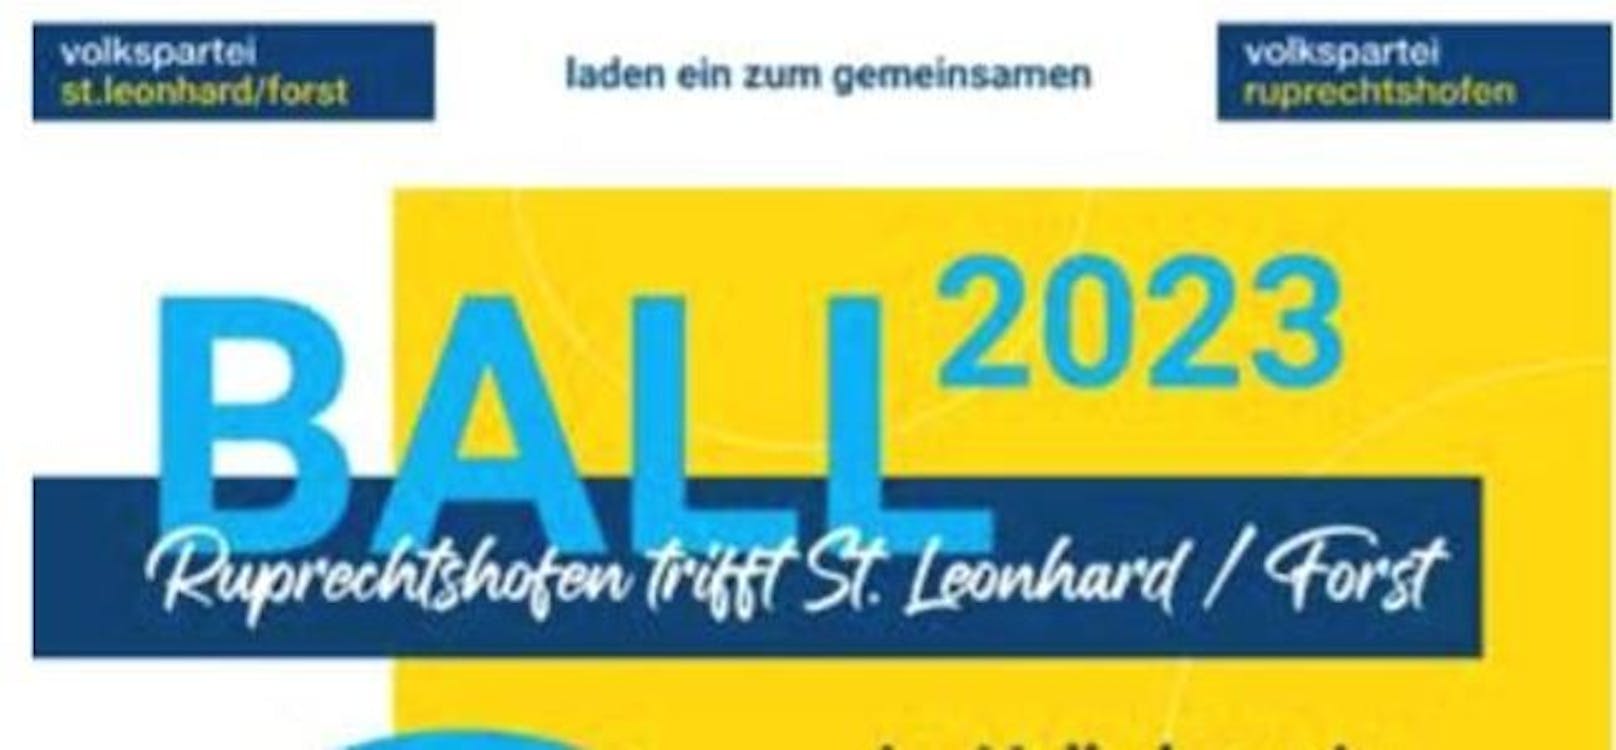 FPÖ kritisiert Werbung mit VP-Logo in Gemeindezeitung